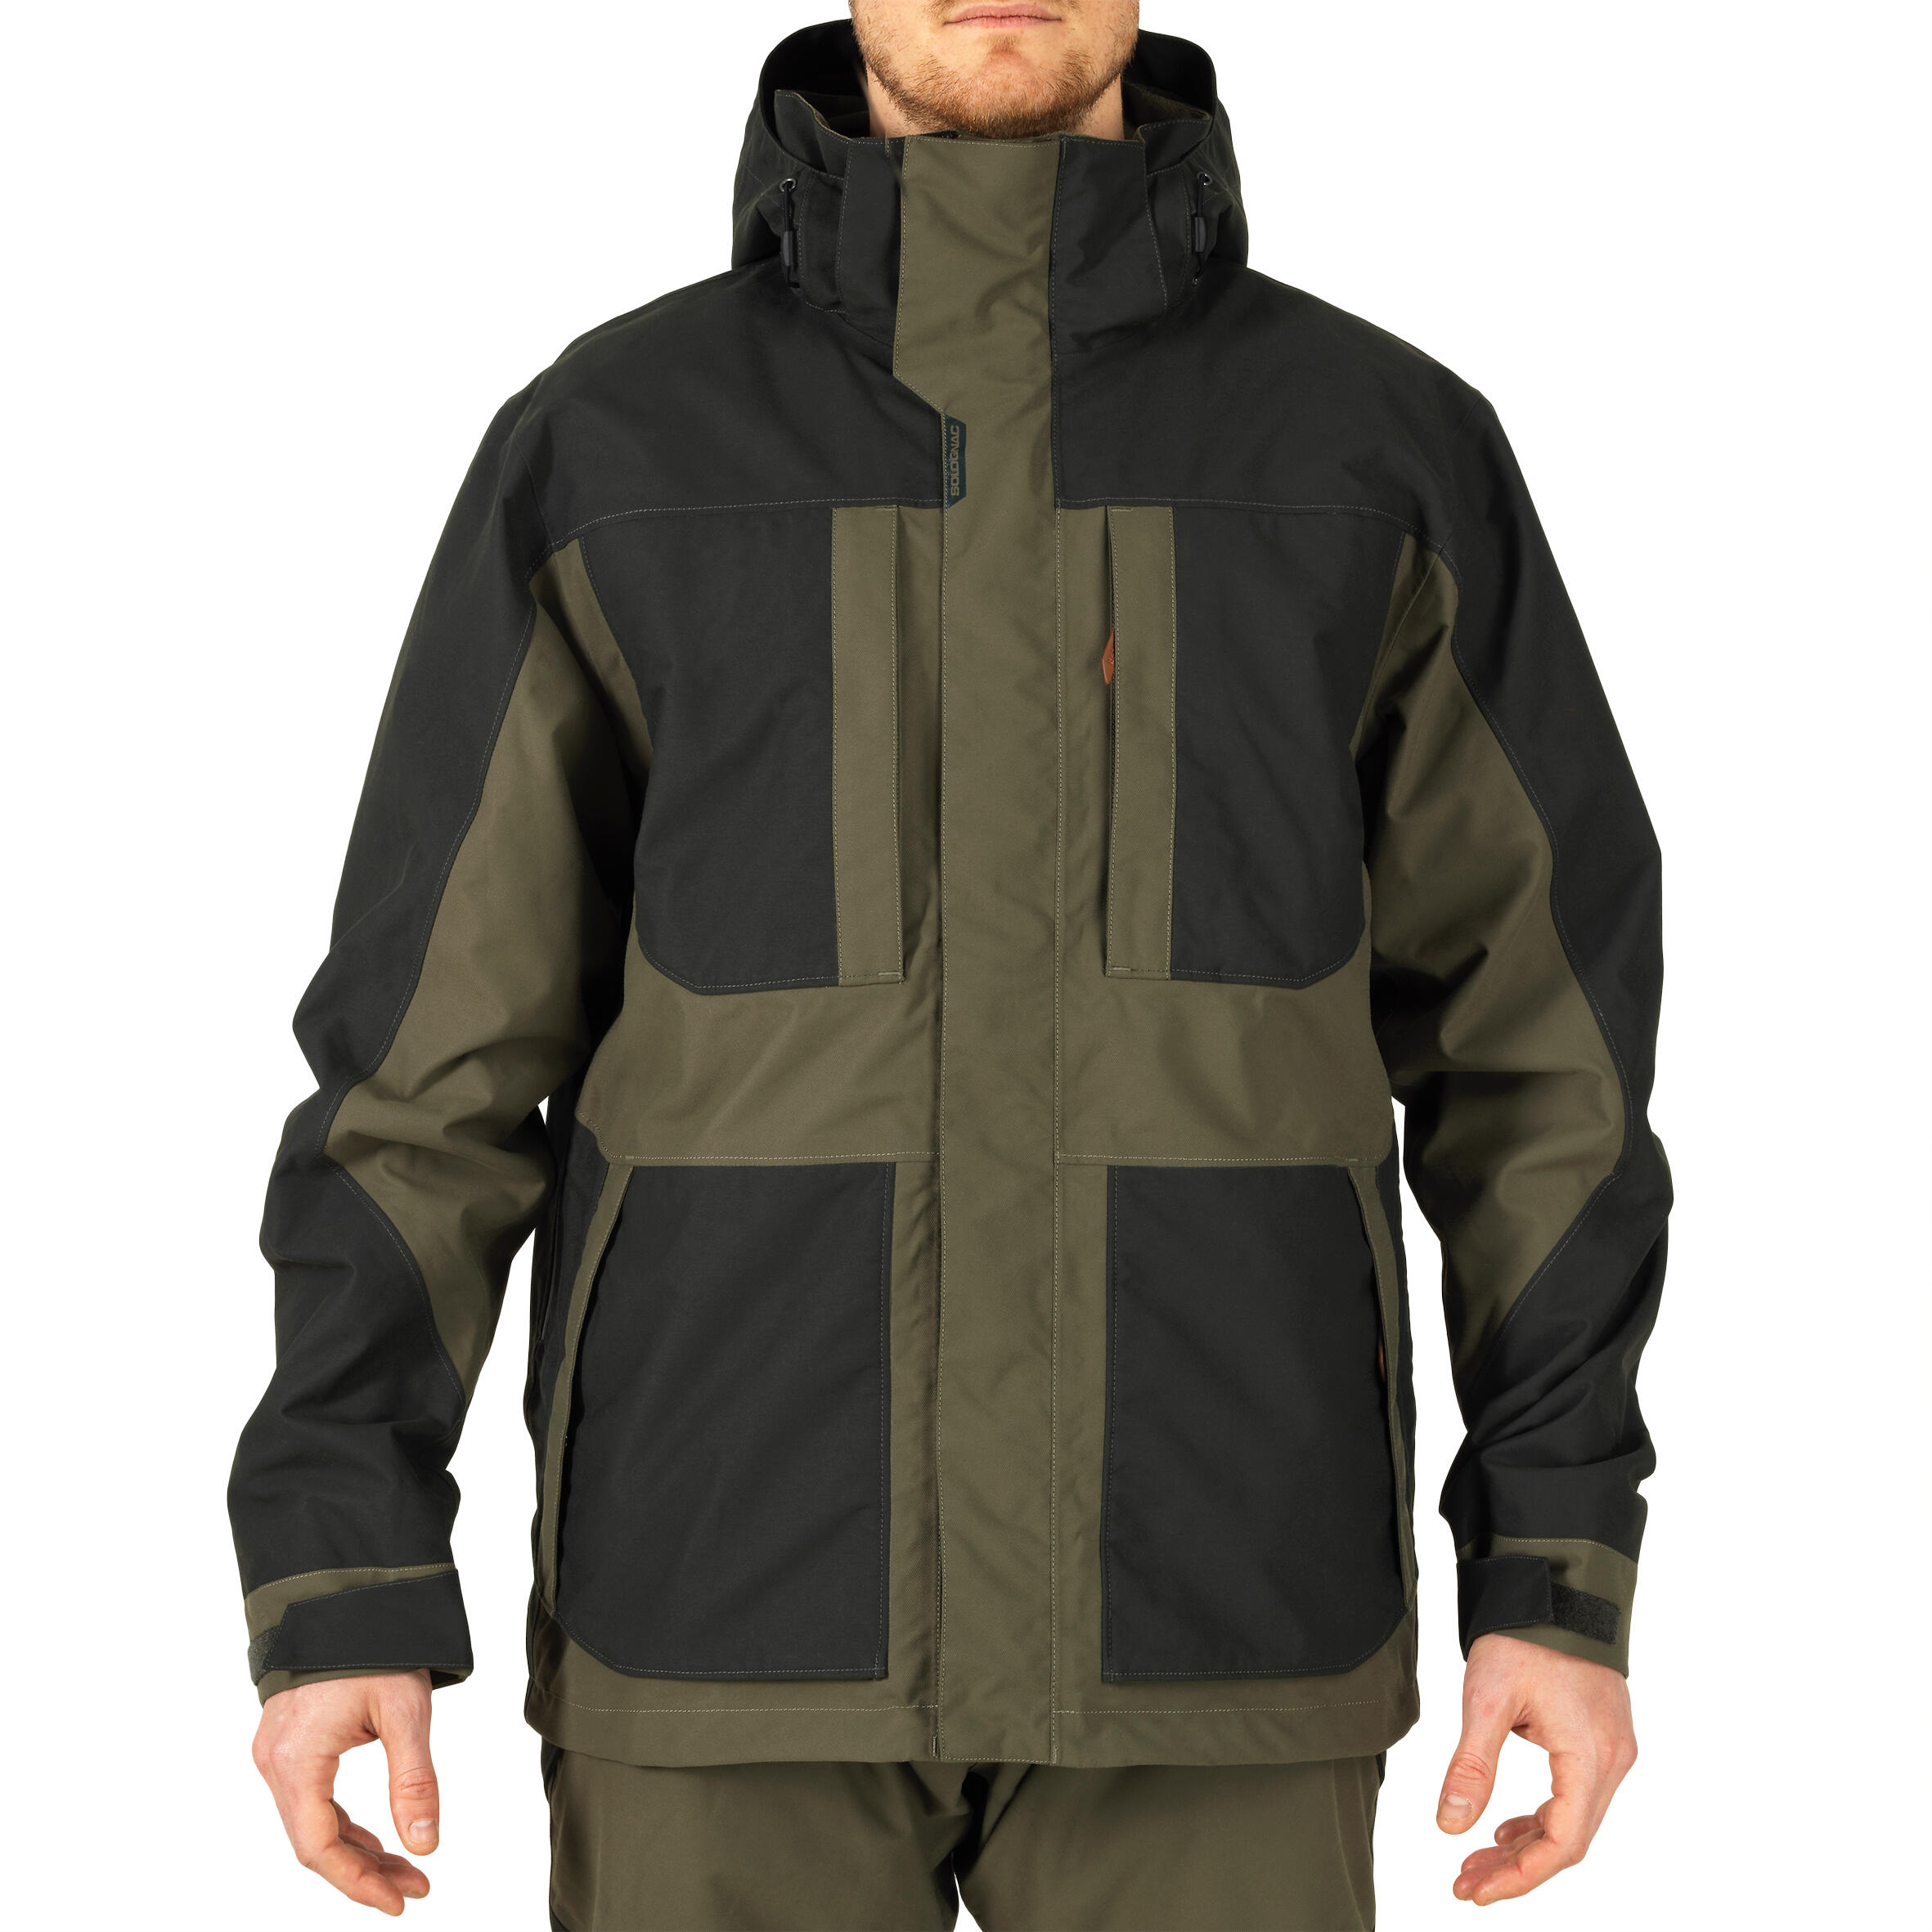 Reinforced Waterproof Jacket - Brown 2/21